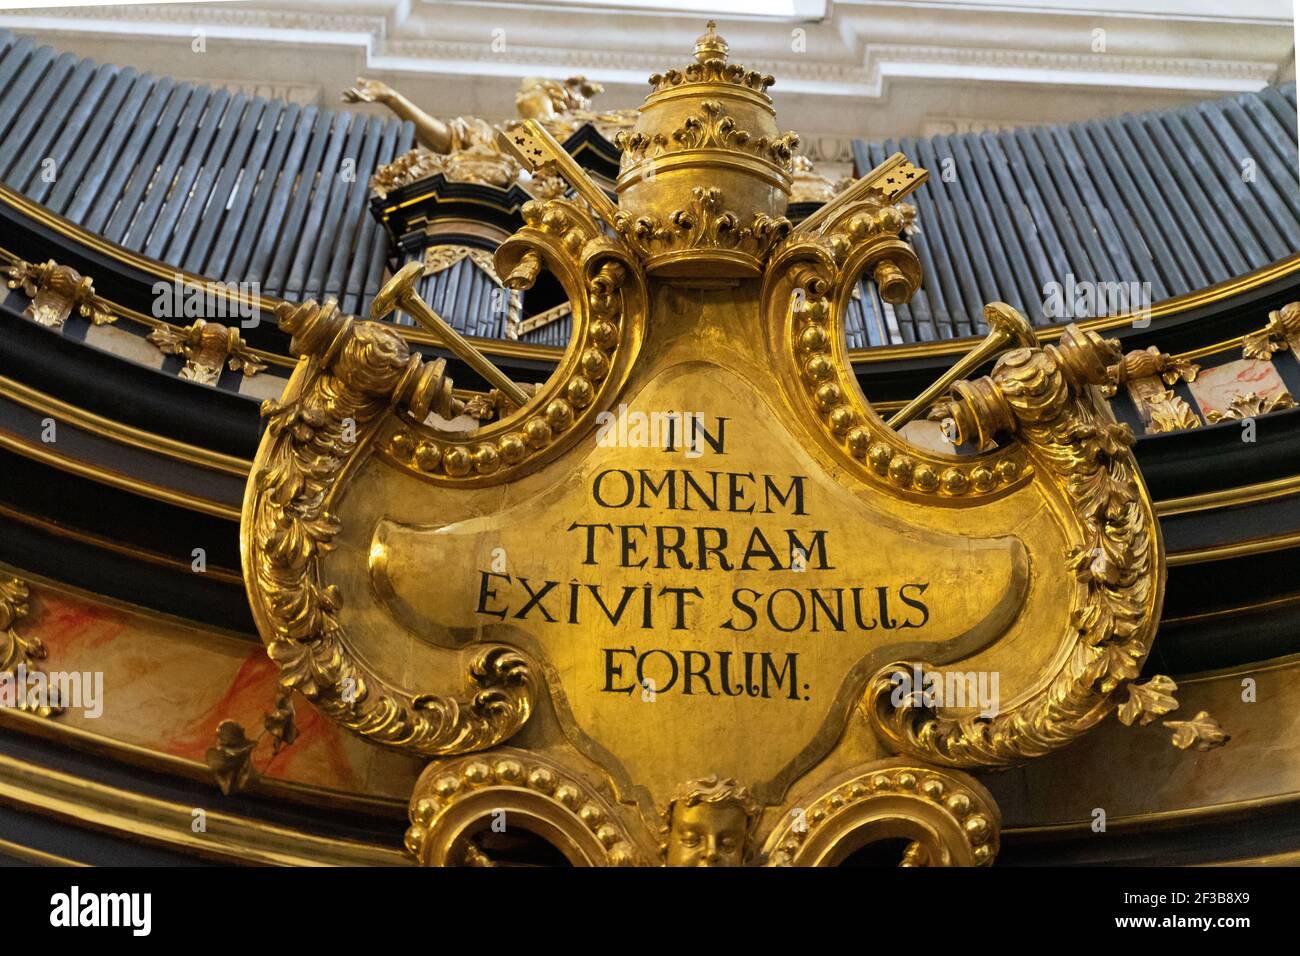 Goldenes Wappen oder Abzeichen mit Omnem Terram Exivit Sonus Eorum (in Latein) Slogan darauf aus Psalm 18:5 Stockfoto